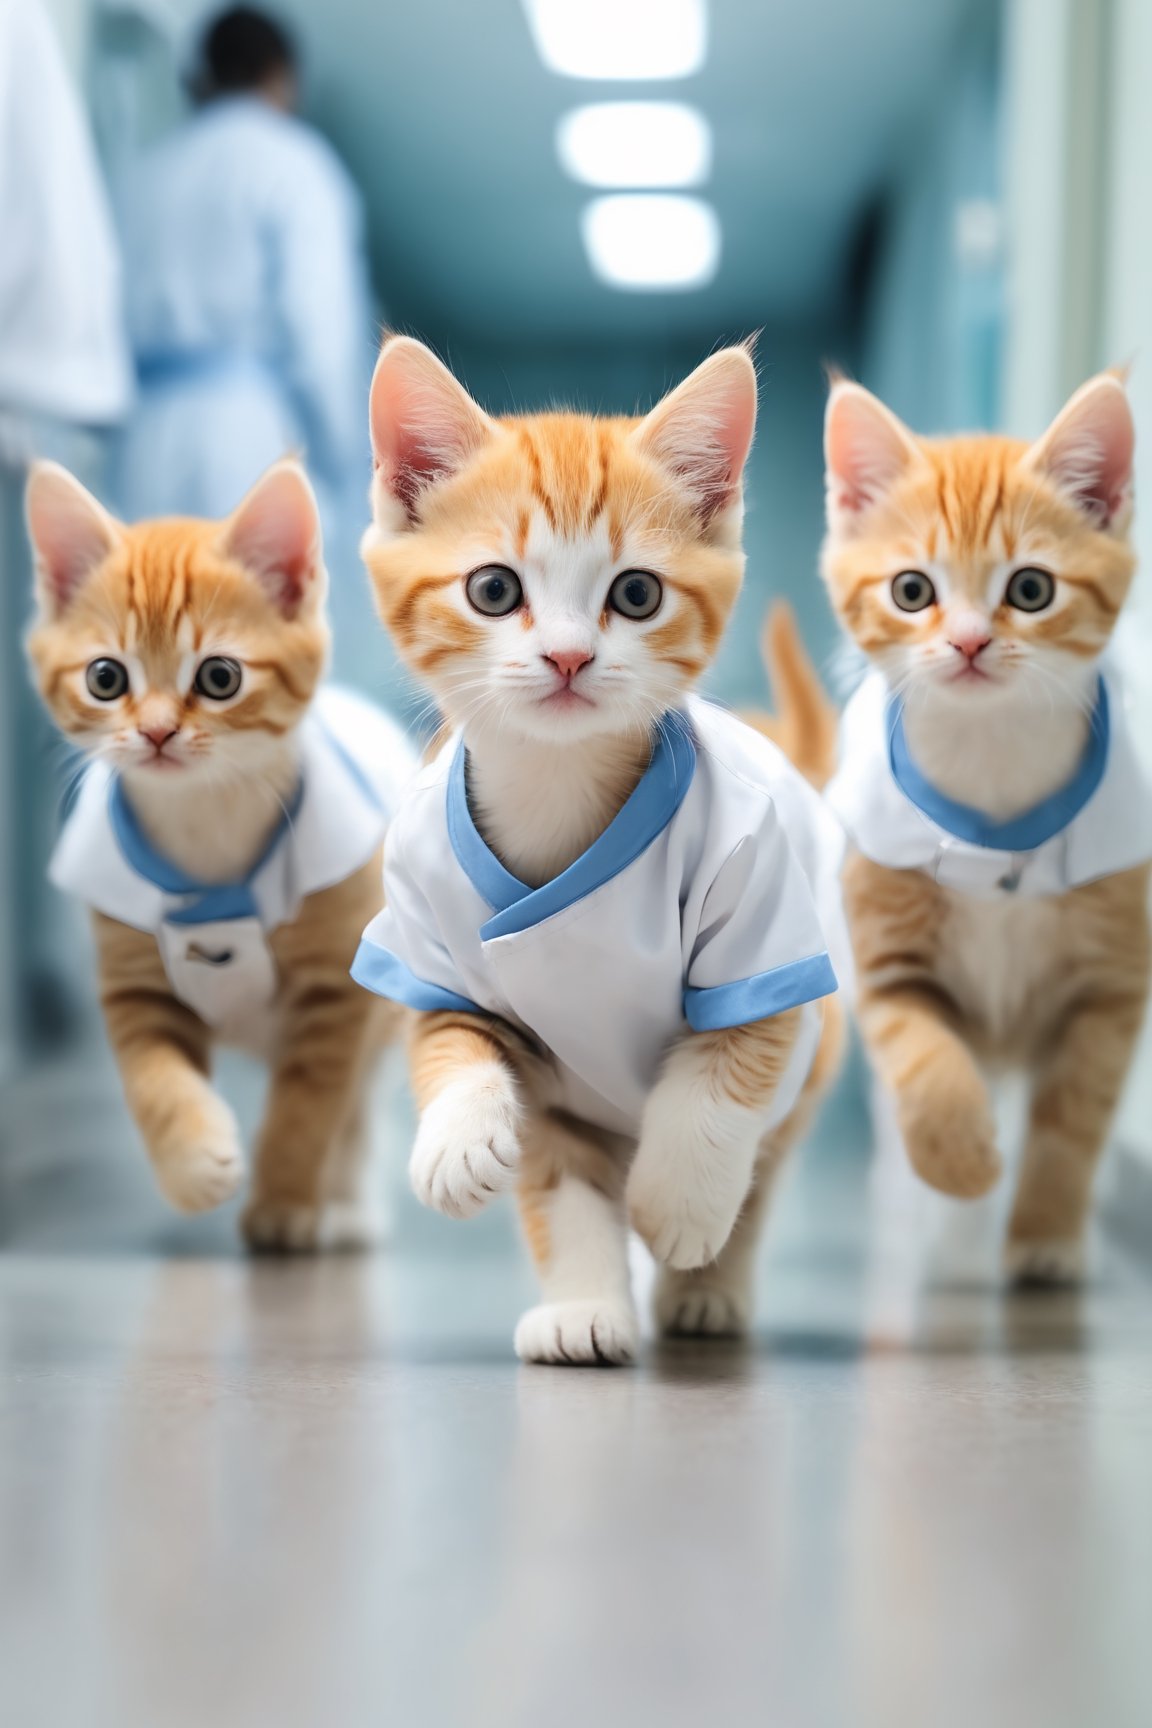 blurry hospital background, kittens in line, wearing nurse uniform, walking like human, clinic operation